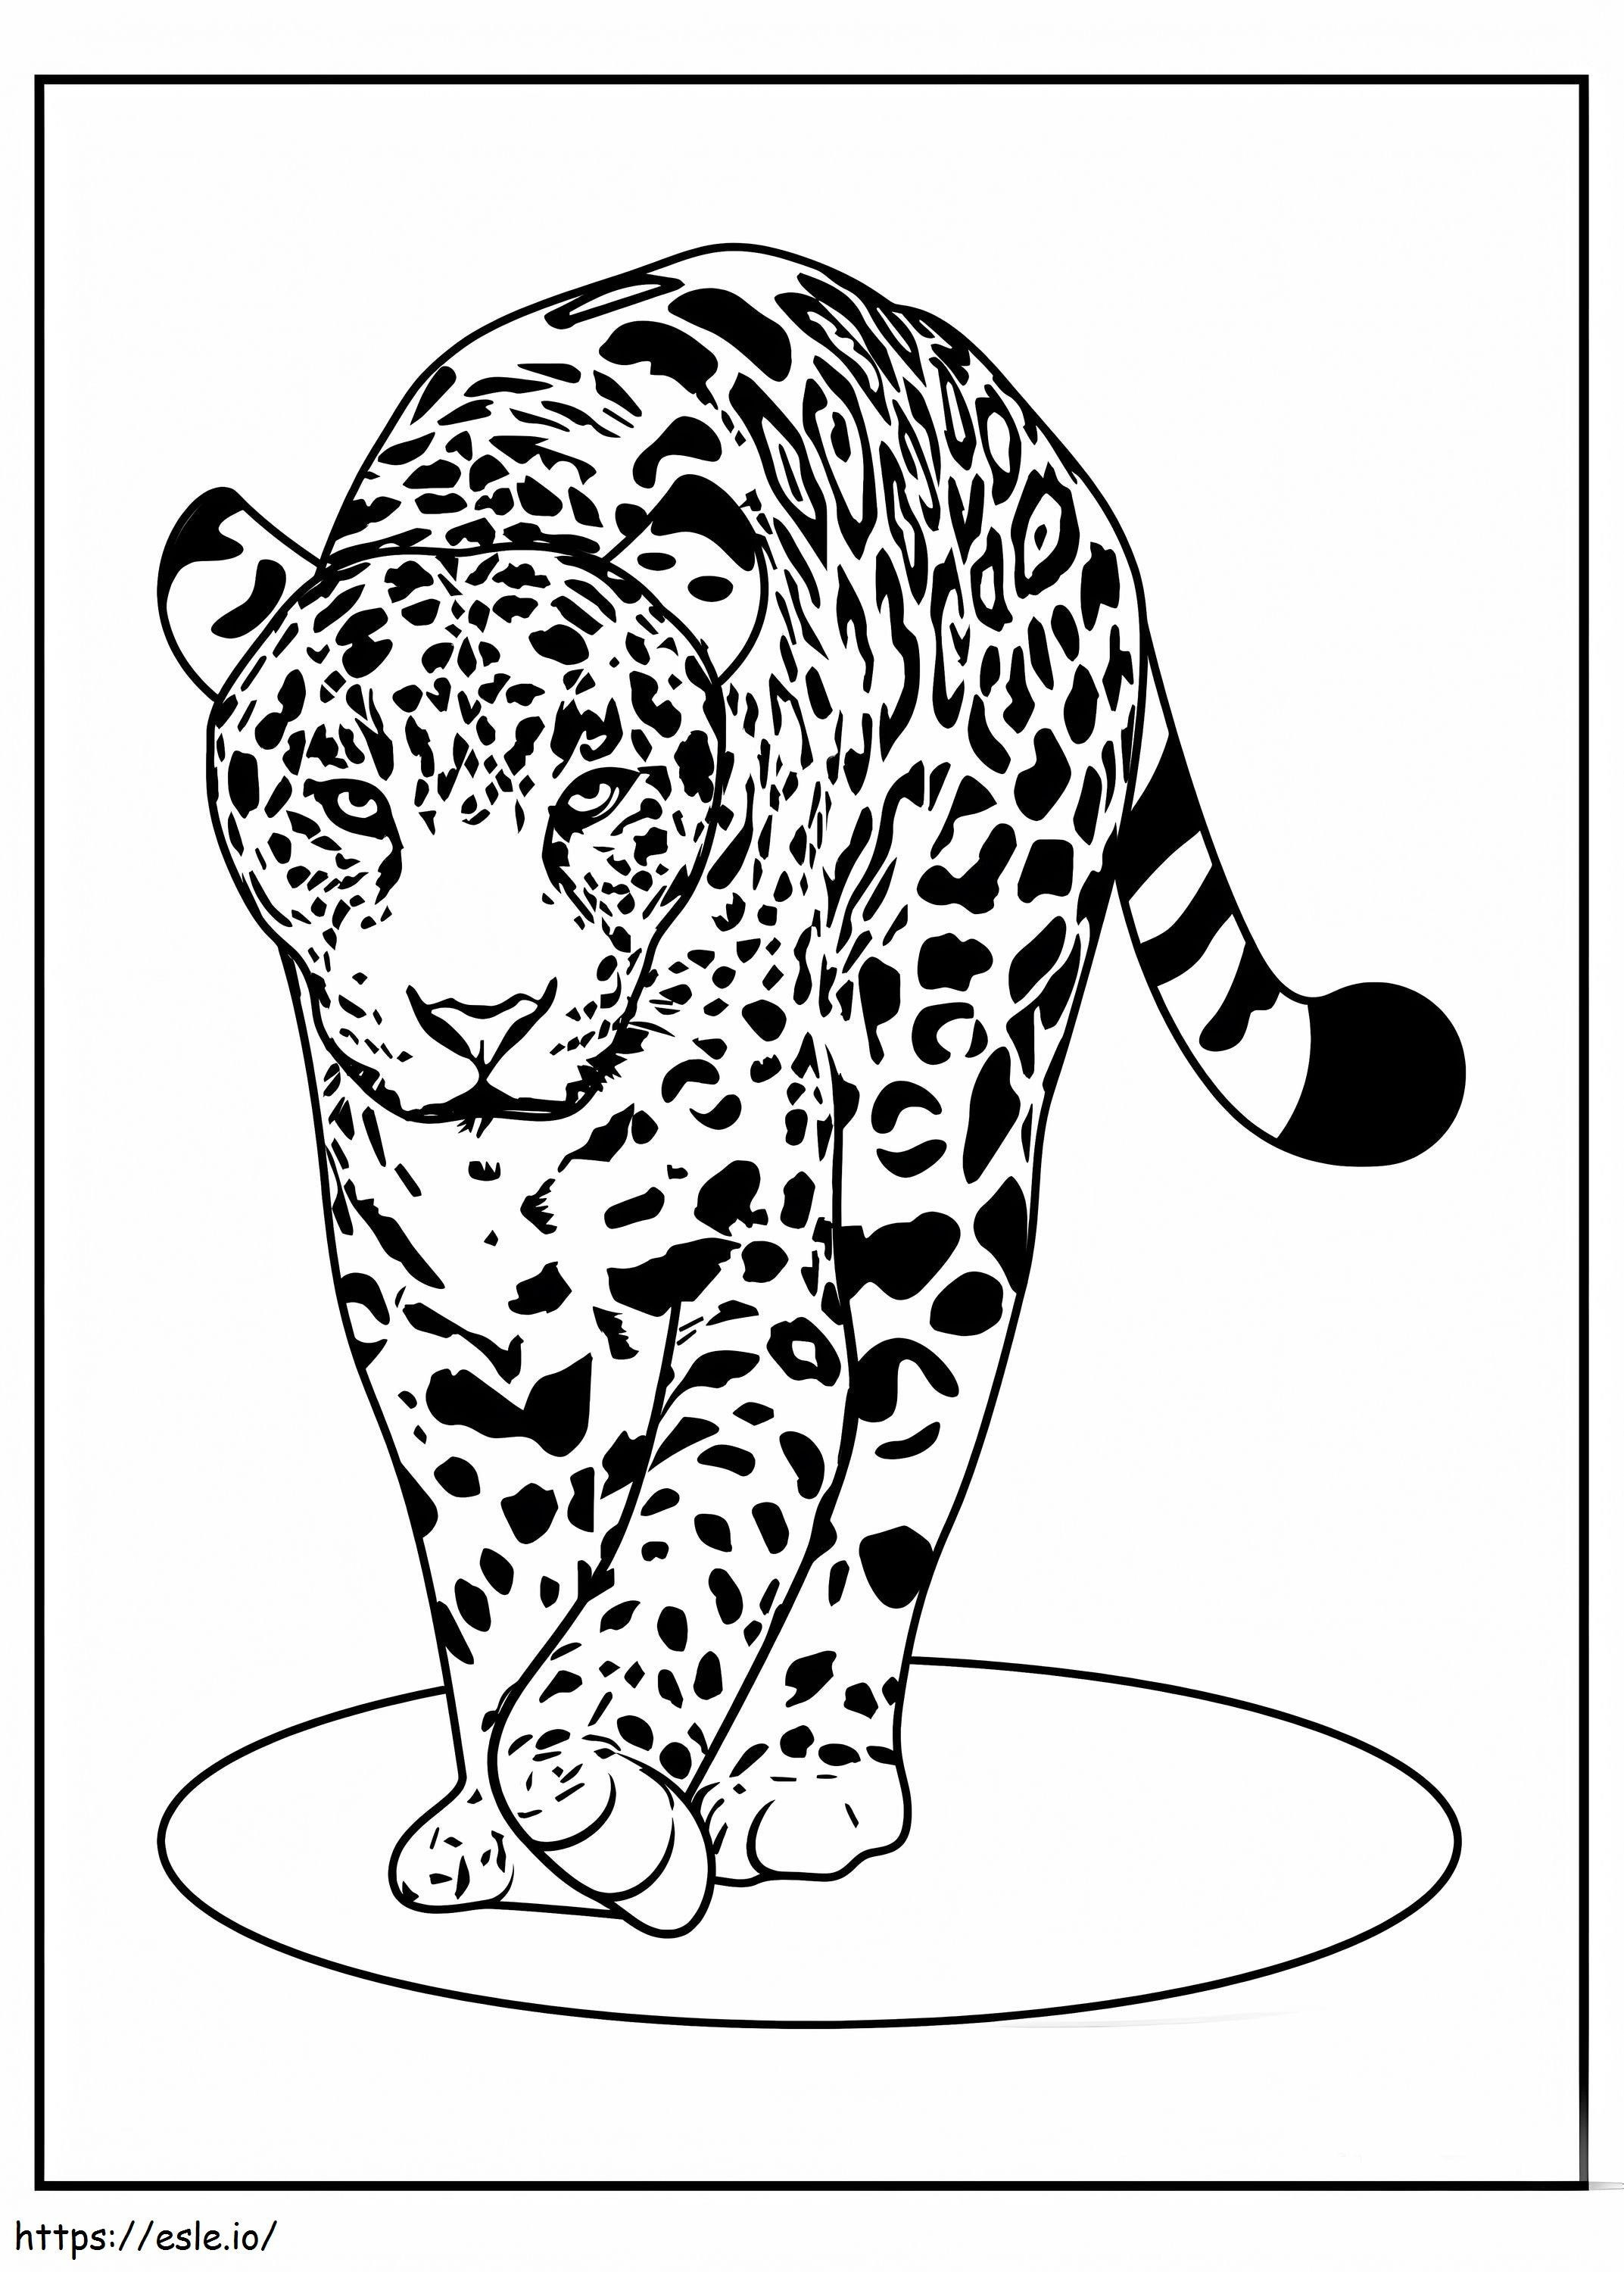 Caminhada legal de leopardo para colorir